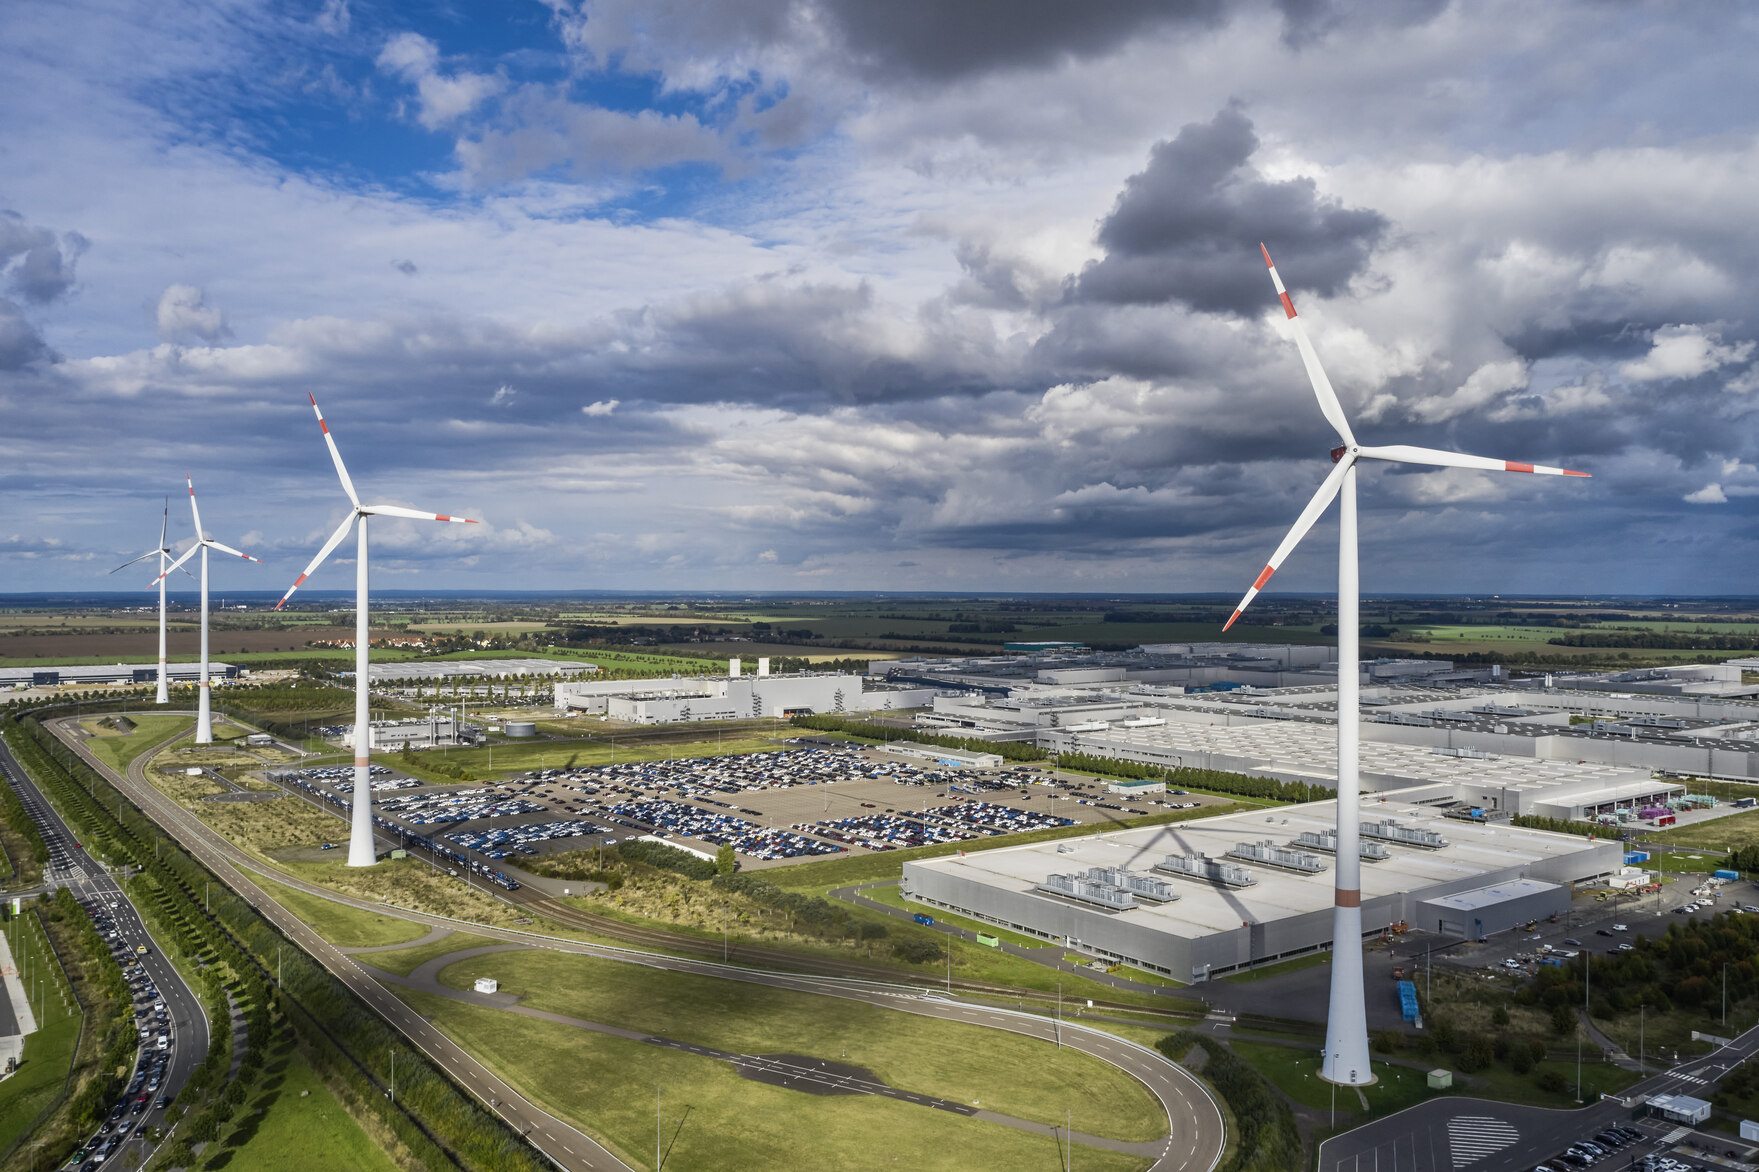 Foto von vier Windrädern am BMW-Werk Leipzig. Hinter den Windrädern sieht man Industrie-Gebäude und einen bewölkten Himmel.